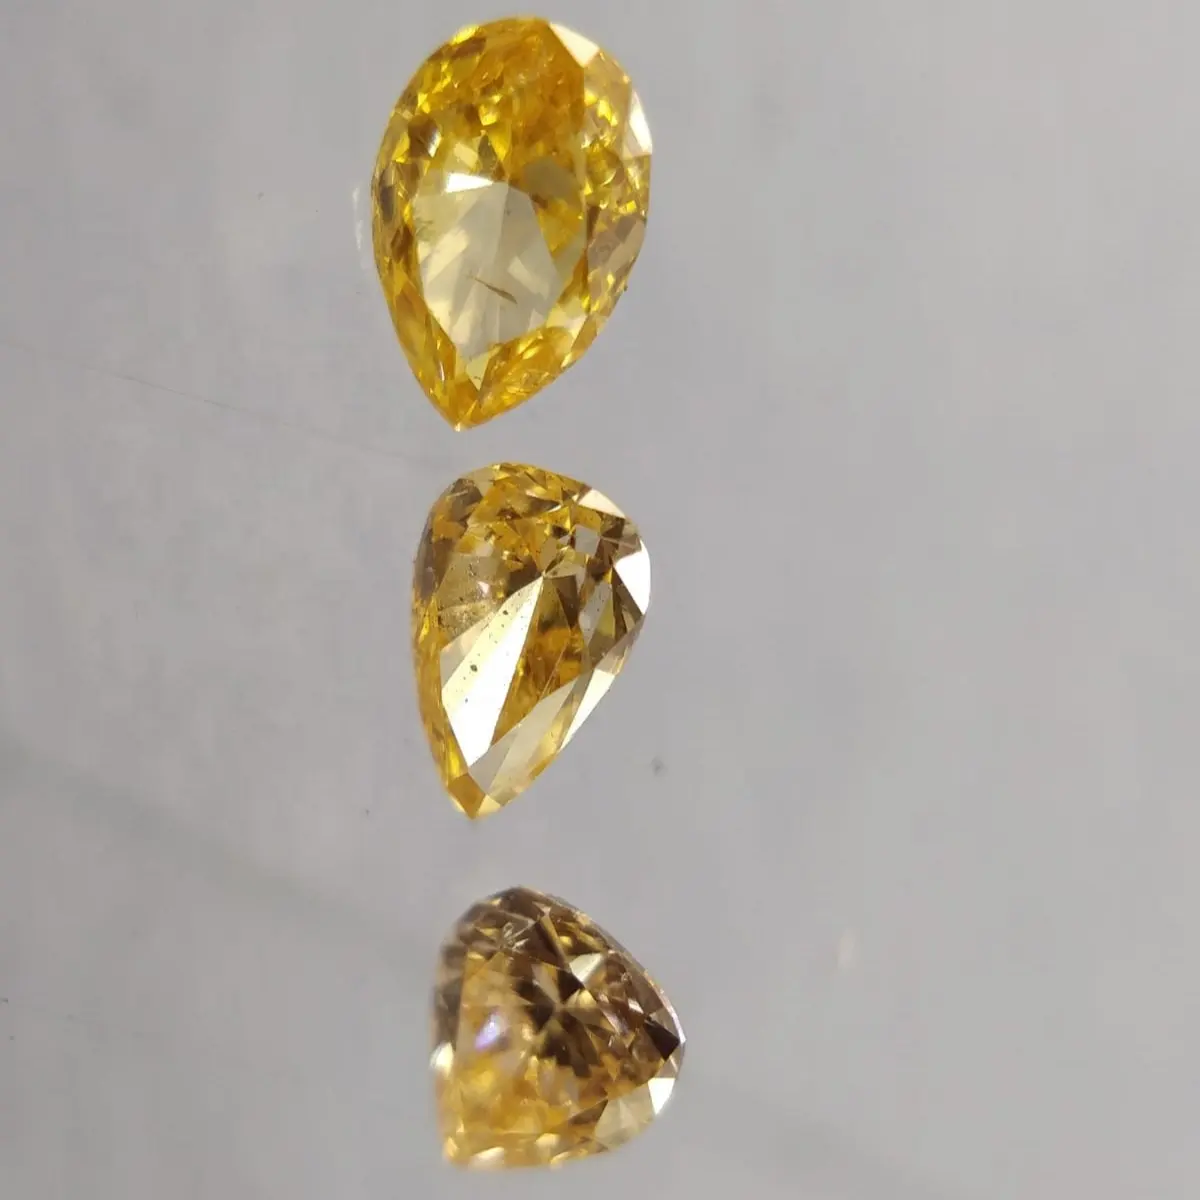 Berlian Lab Kualitas Super Potongan Semua Warna Mewah Alami Tumbuh Longgar Dipoles Berlian Yang Sangat Baik untuk Perhiasan